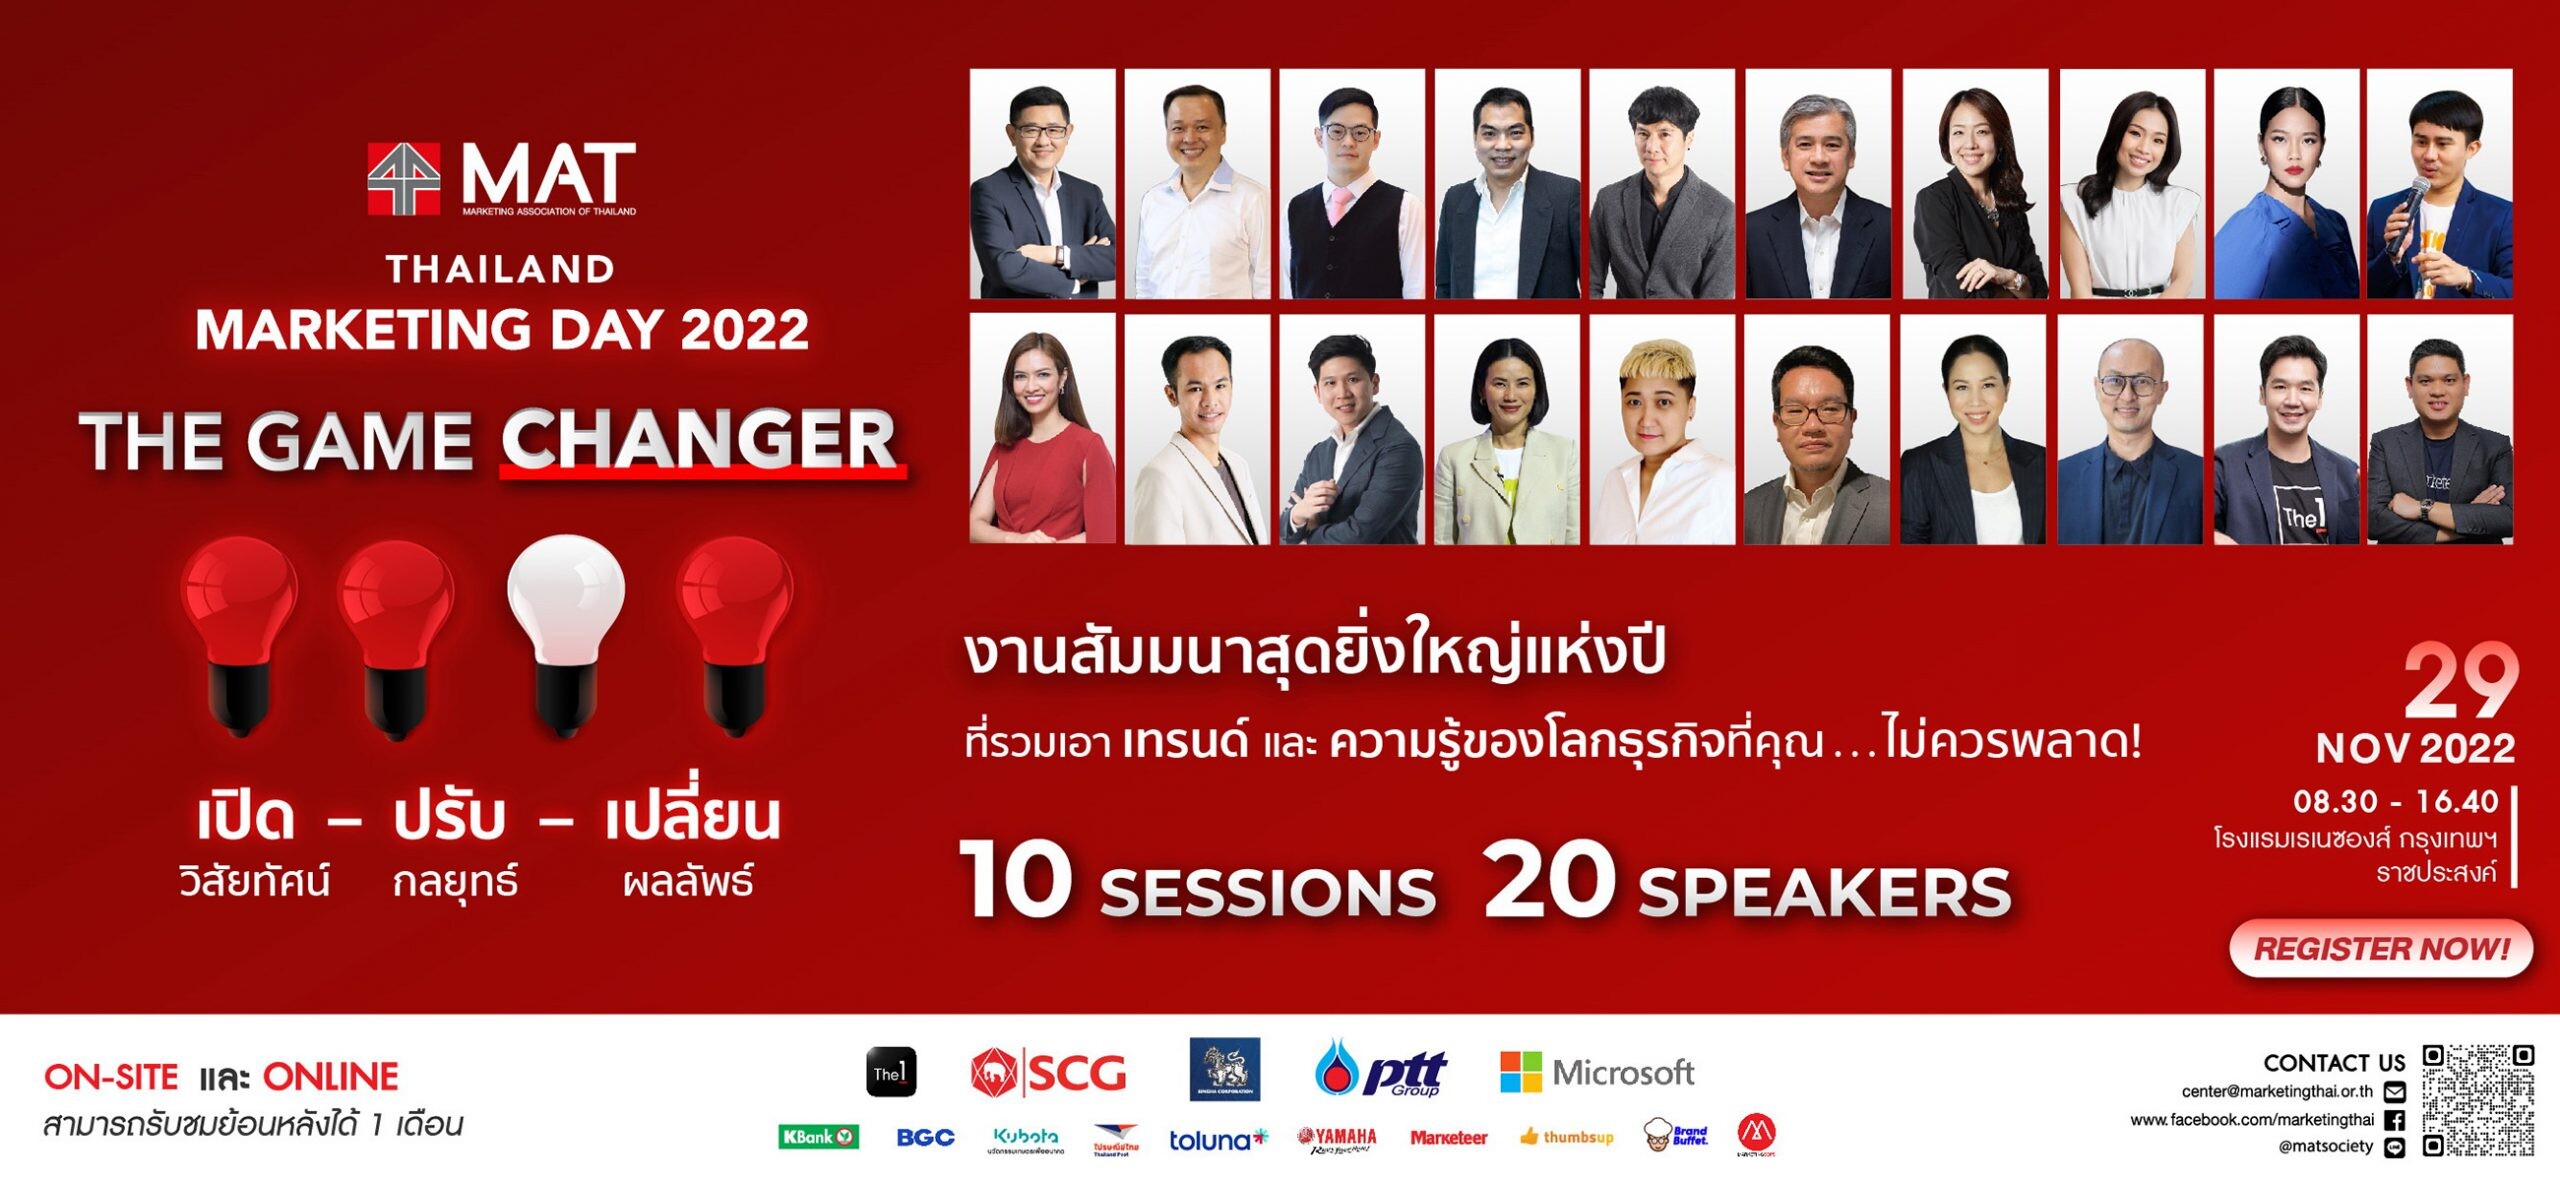 งานวันนักการตลาด "Thailand Marketing Day 2022 : The Game Changer"